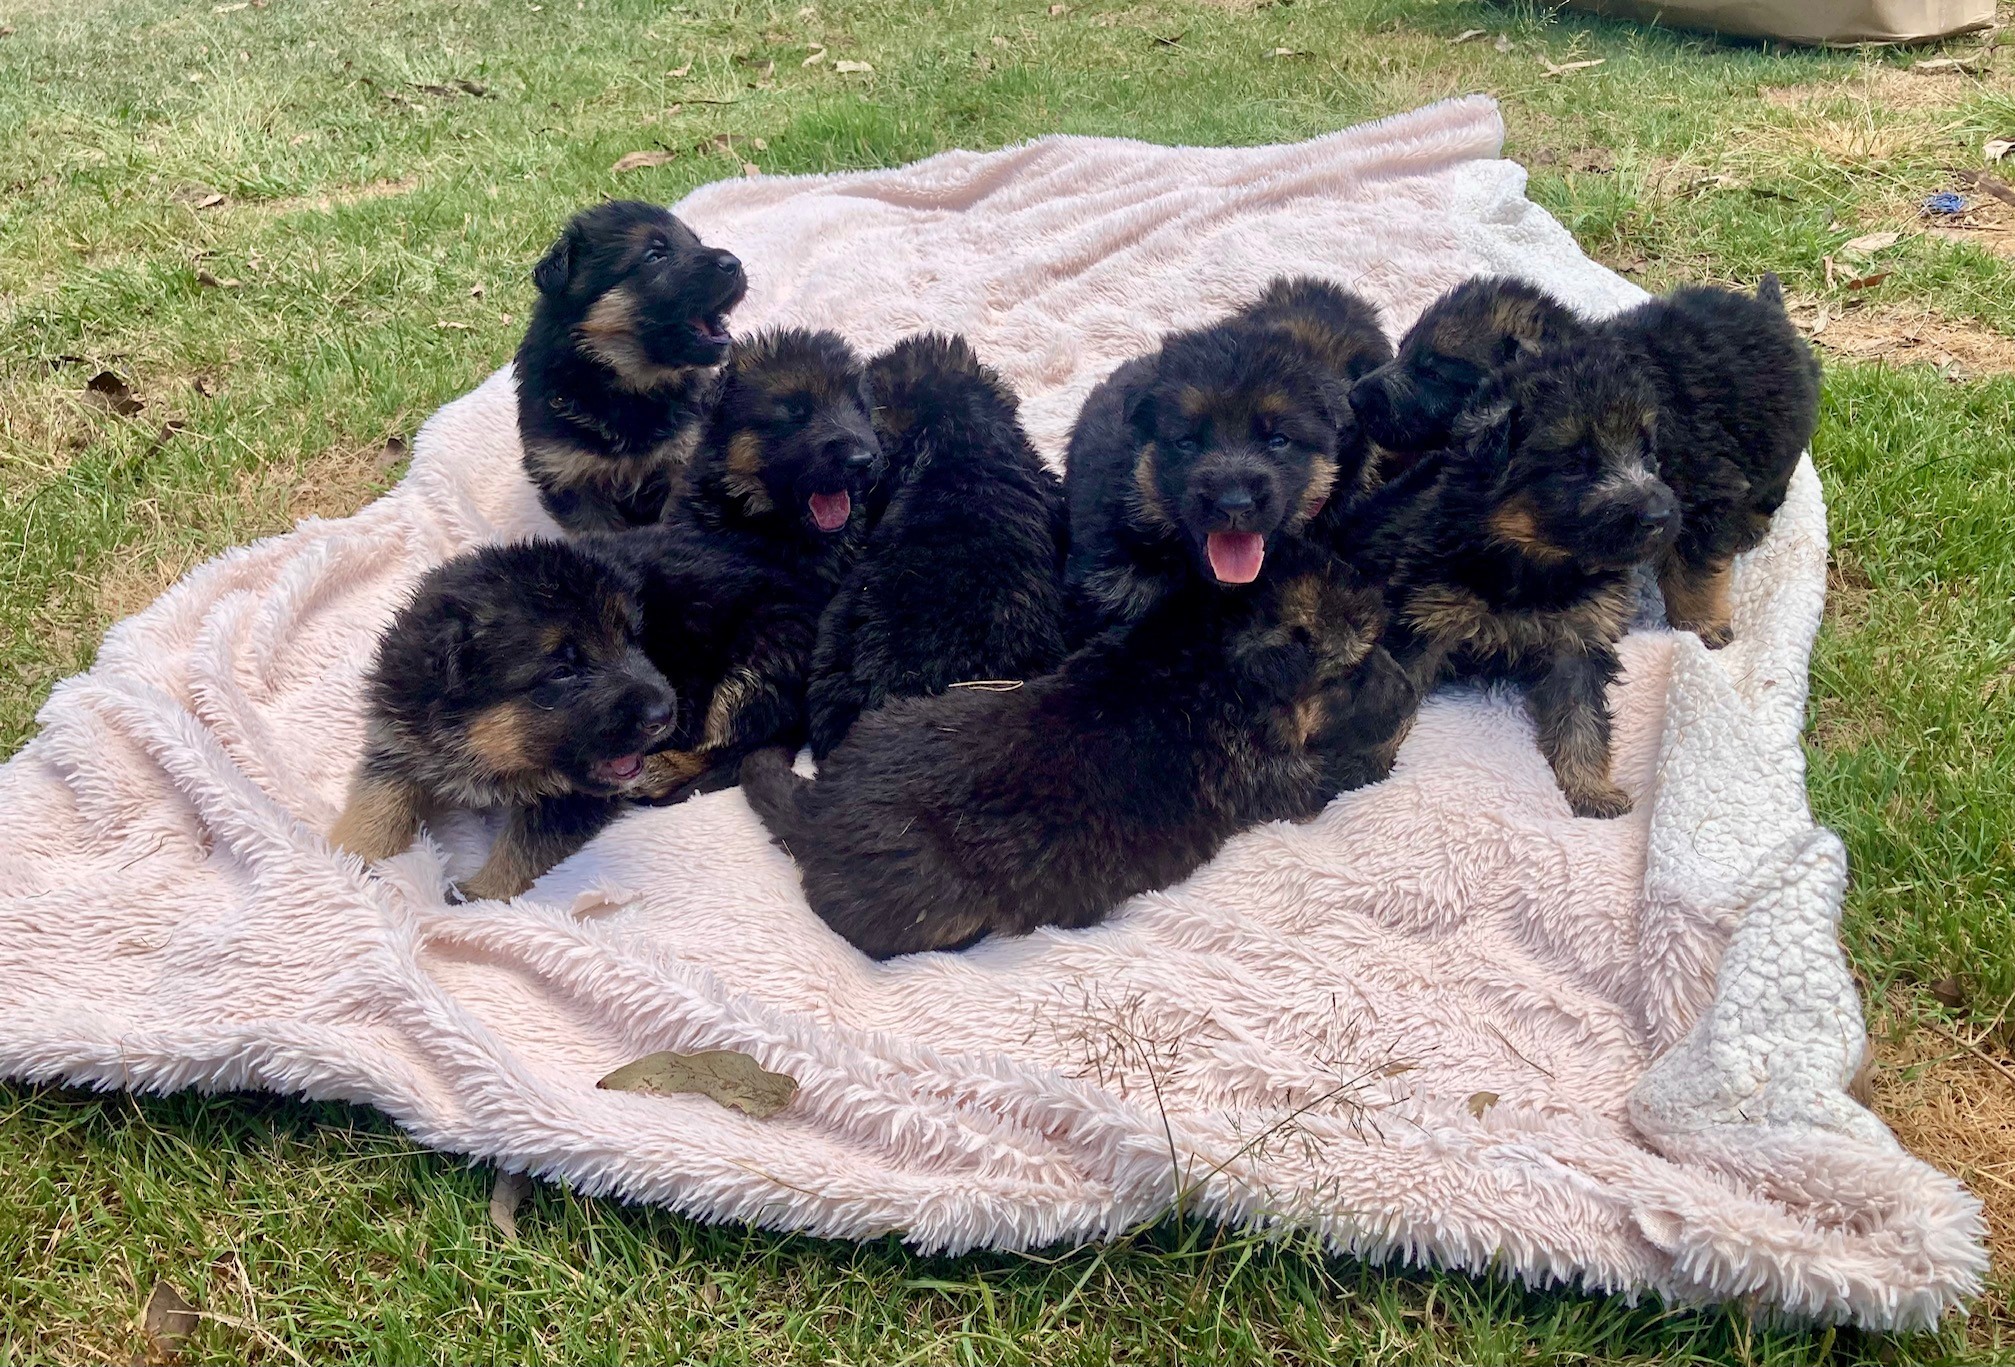 German Shepherd puppies at 3 weeks